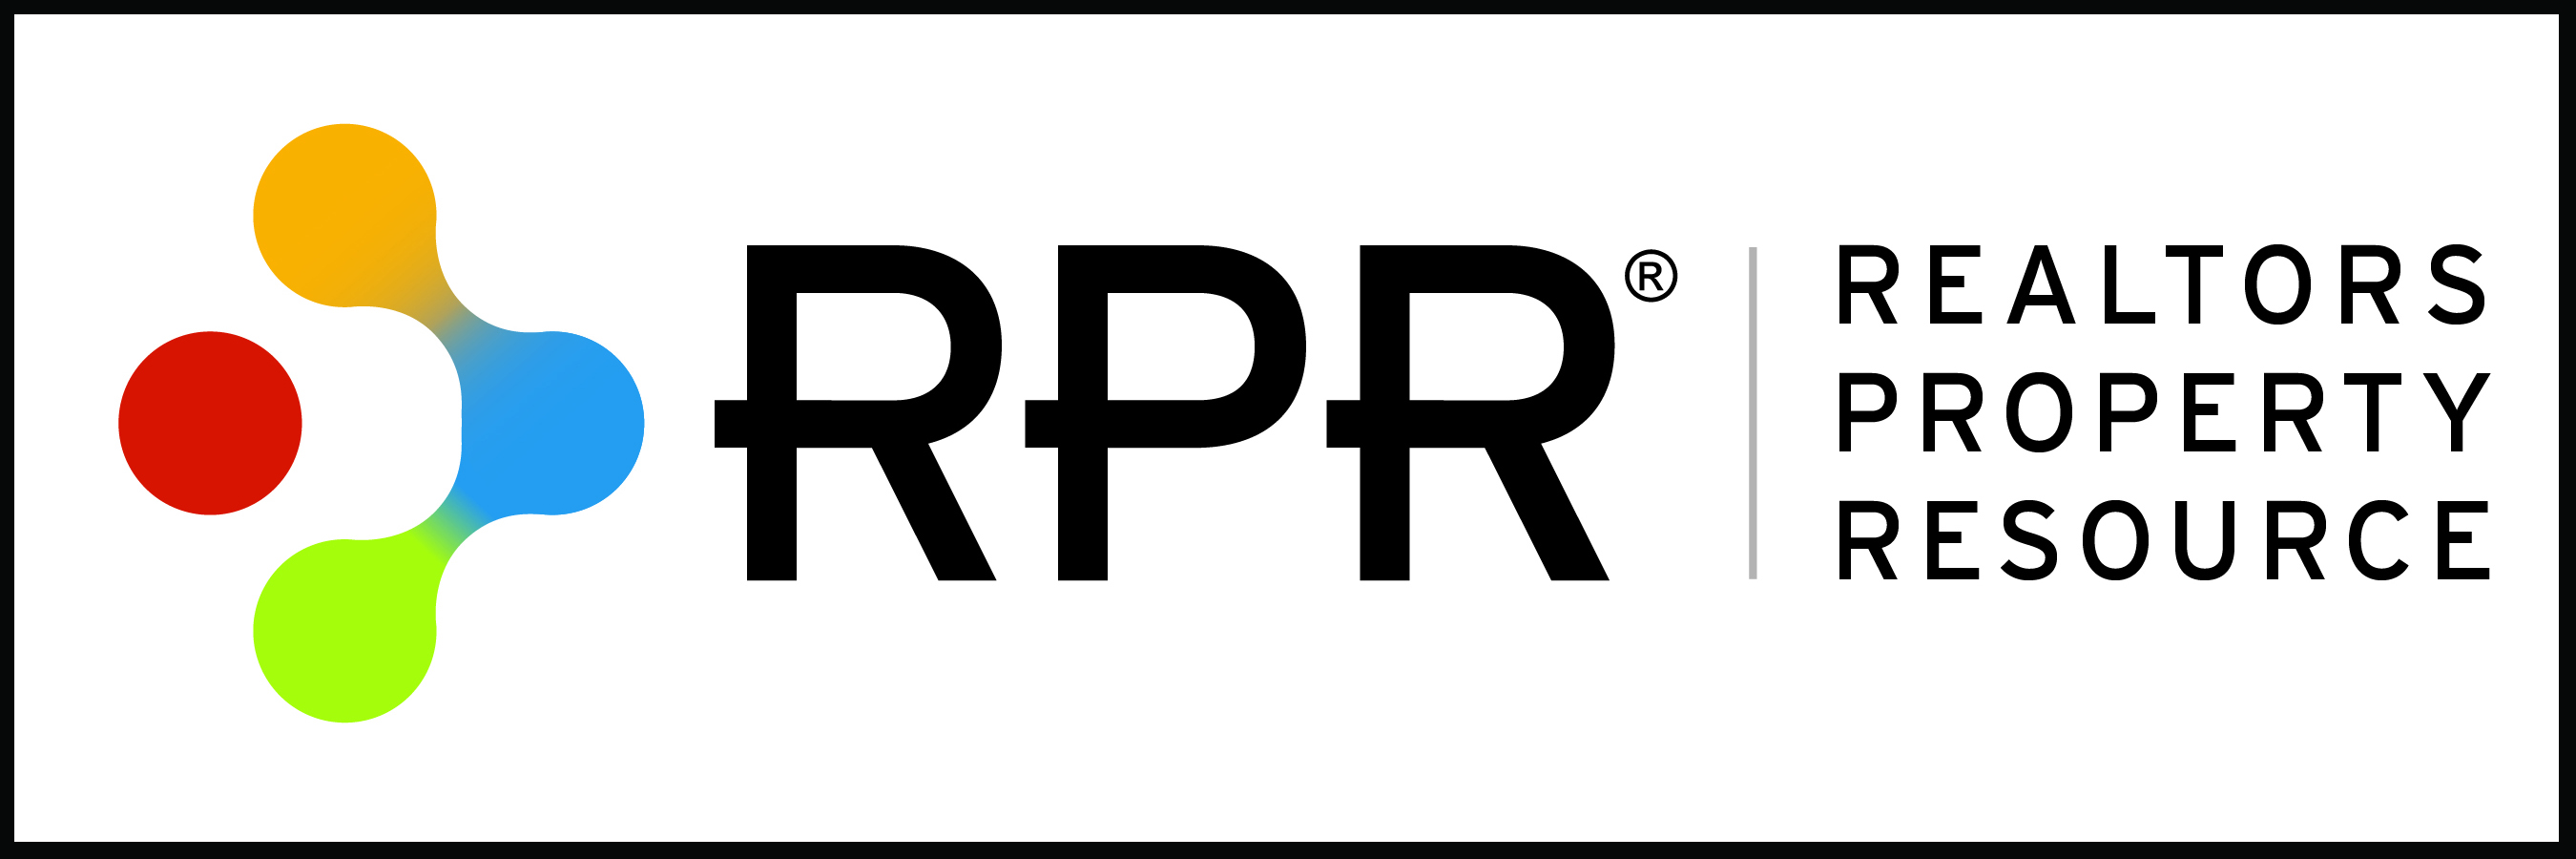 Properties resources. RPR. RPR лого. РПР. RPR компания.